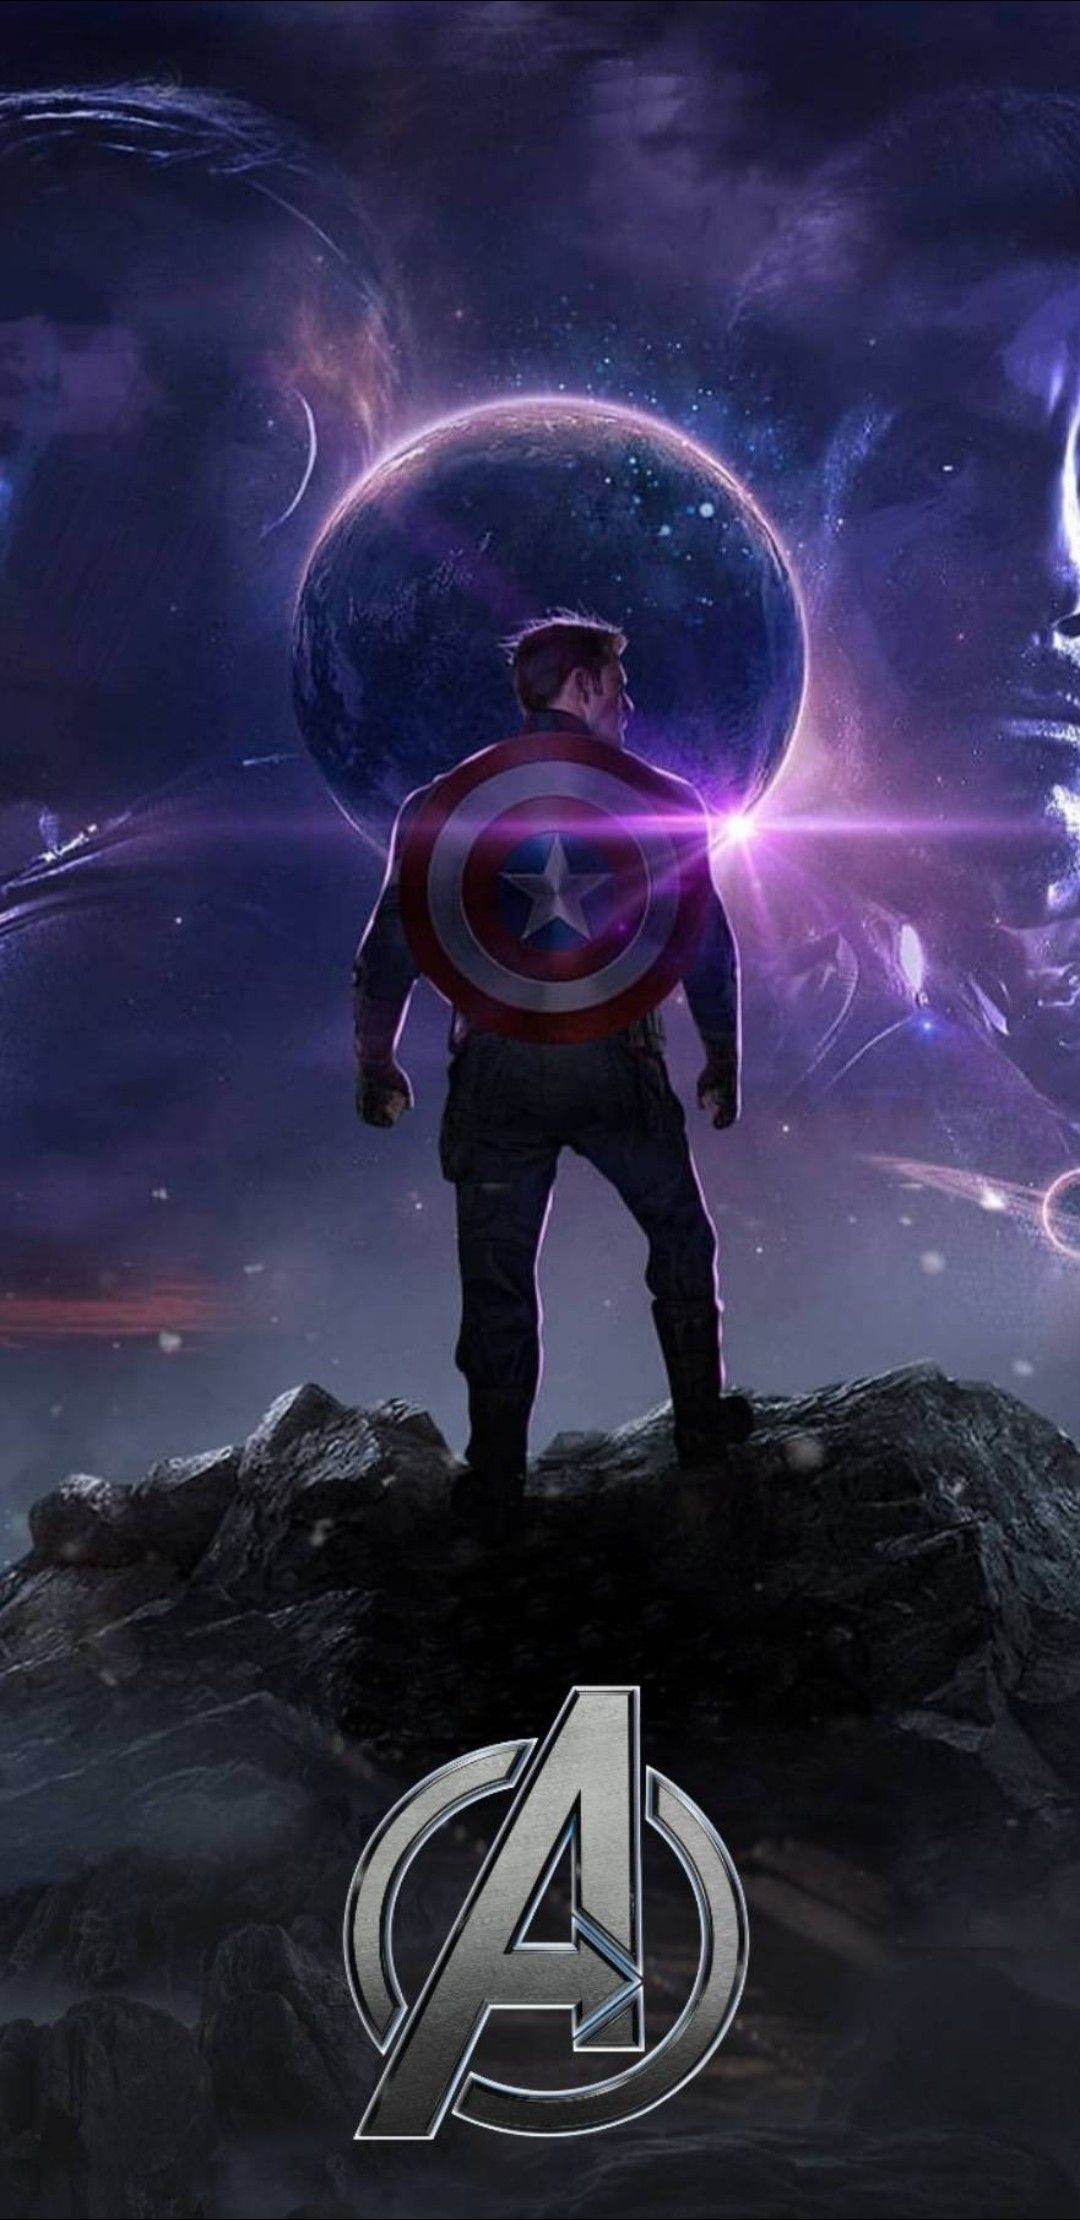 21+] Captain Marvel Endgame Wallpapers - WallpaperSafari